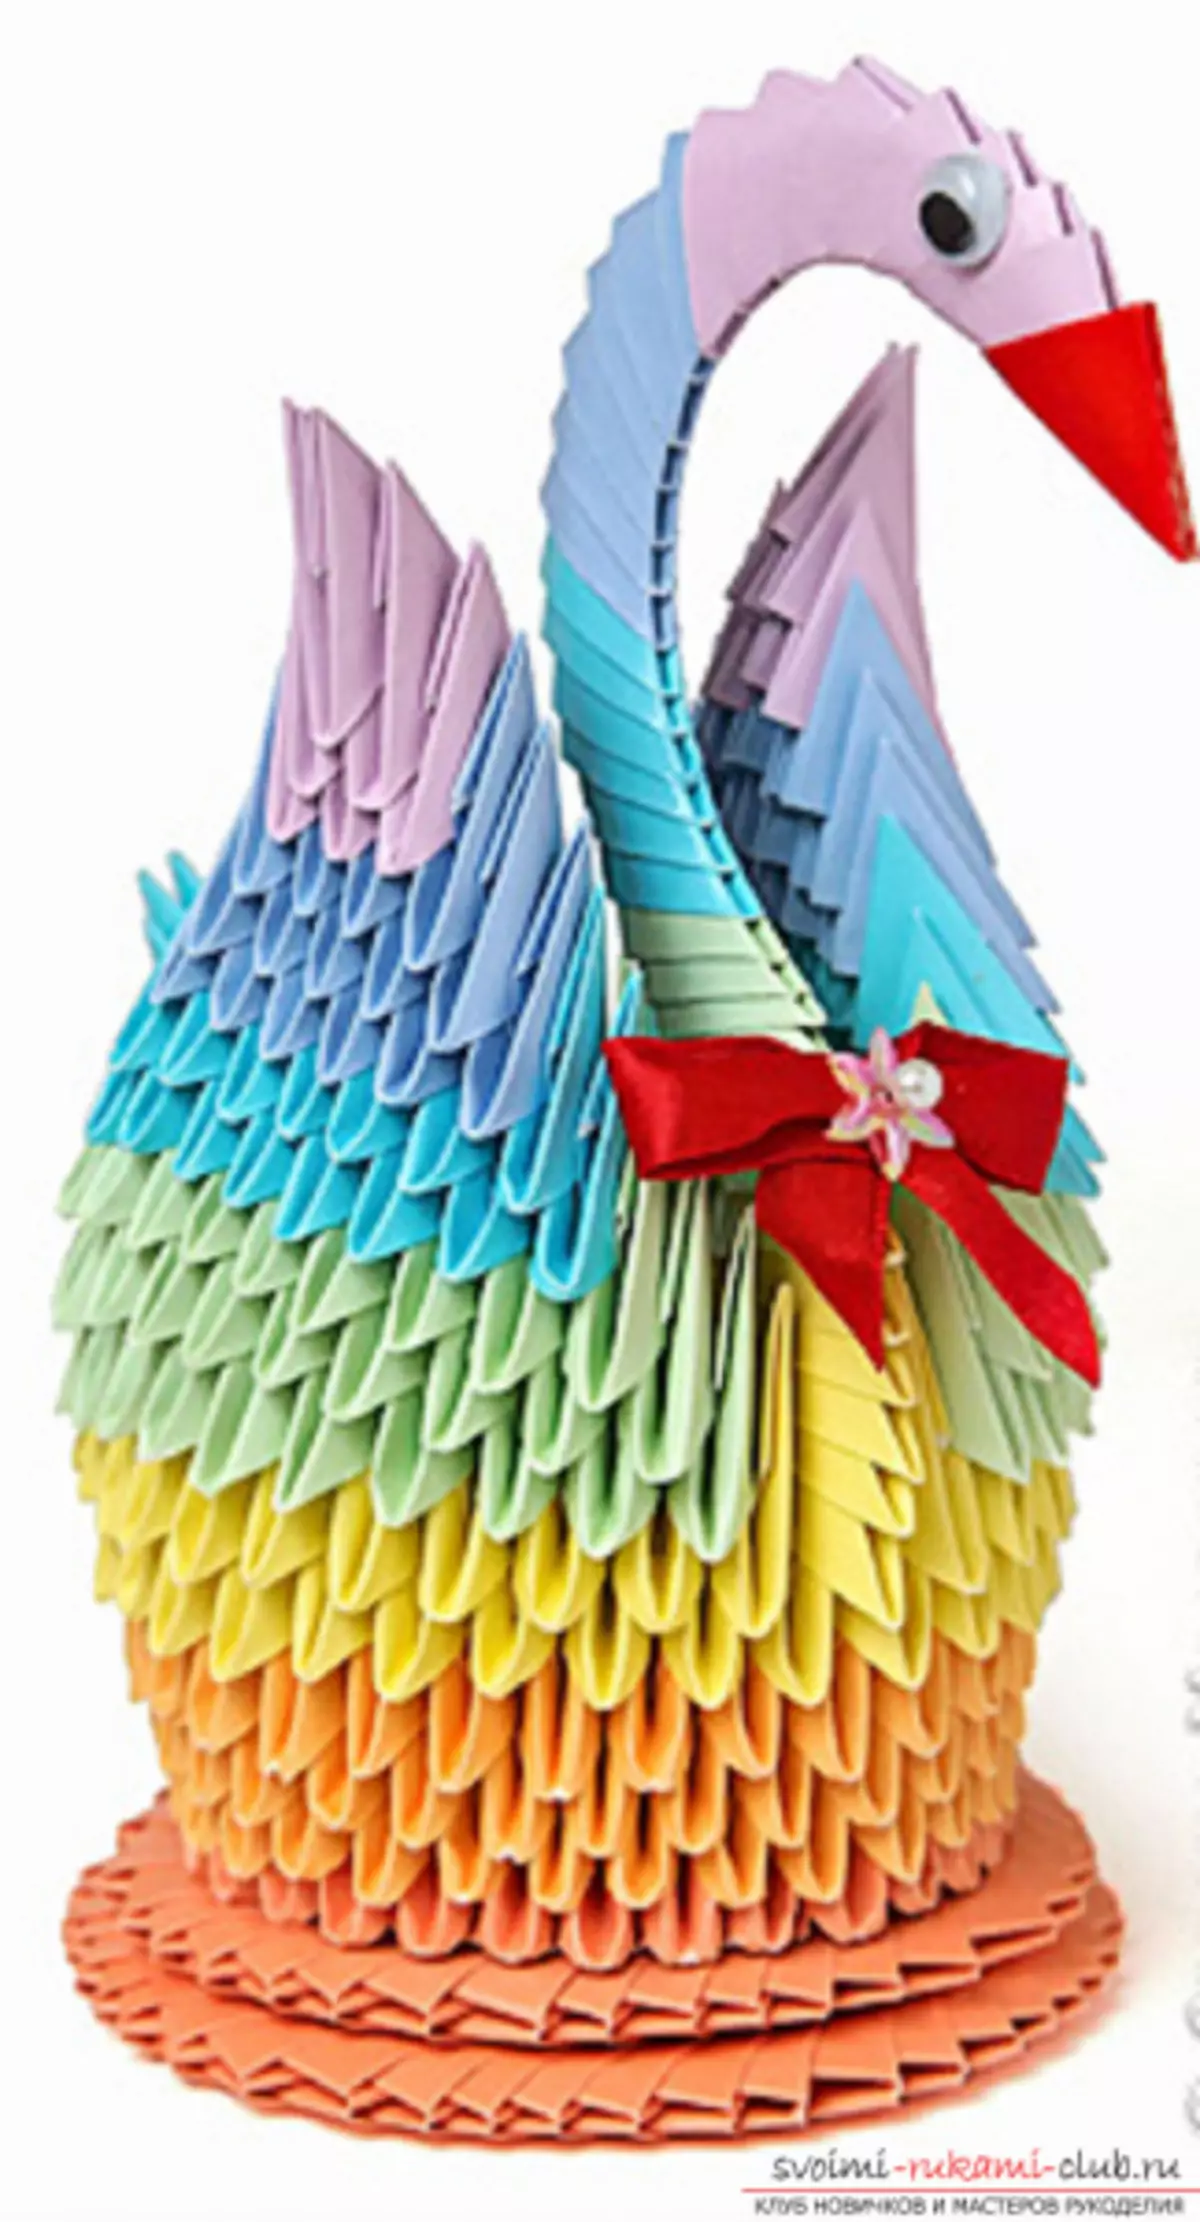 lebed origami ពីក្រដាស: របៀបធ្វើជំហានម្តង ៗ ជាមួយរូបថតនិងវីដេអូ